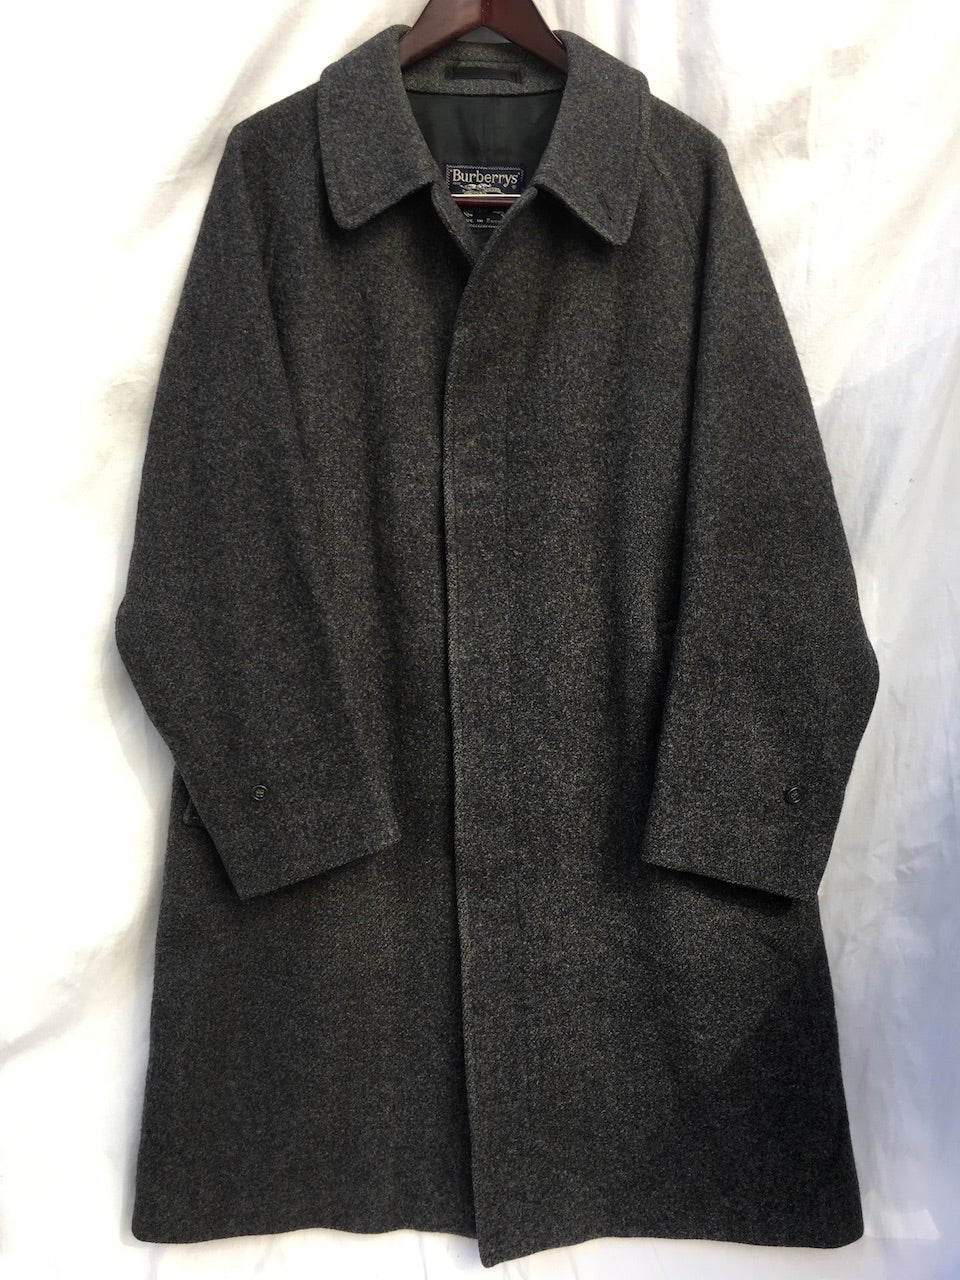 Vintage Burberry Tweed Balmacaan Coat / 1枚袖